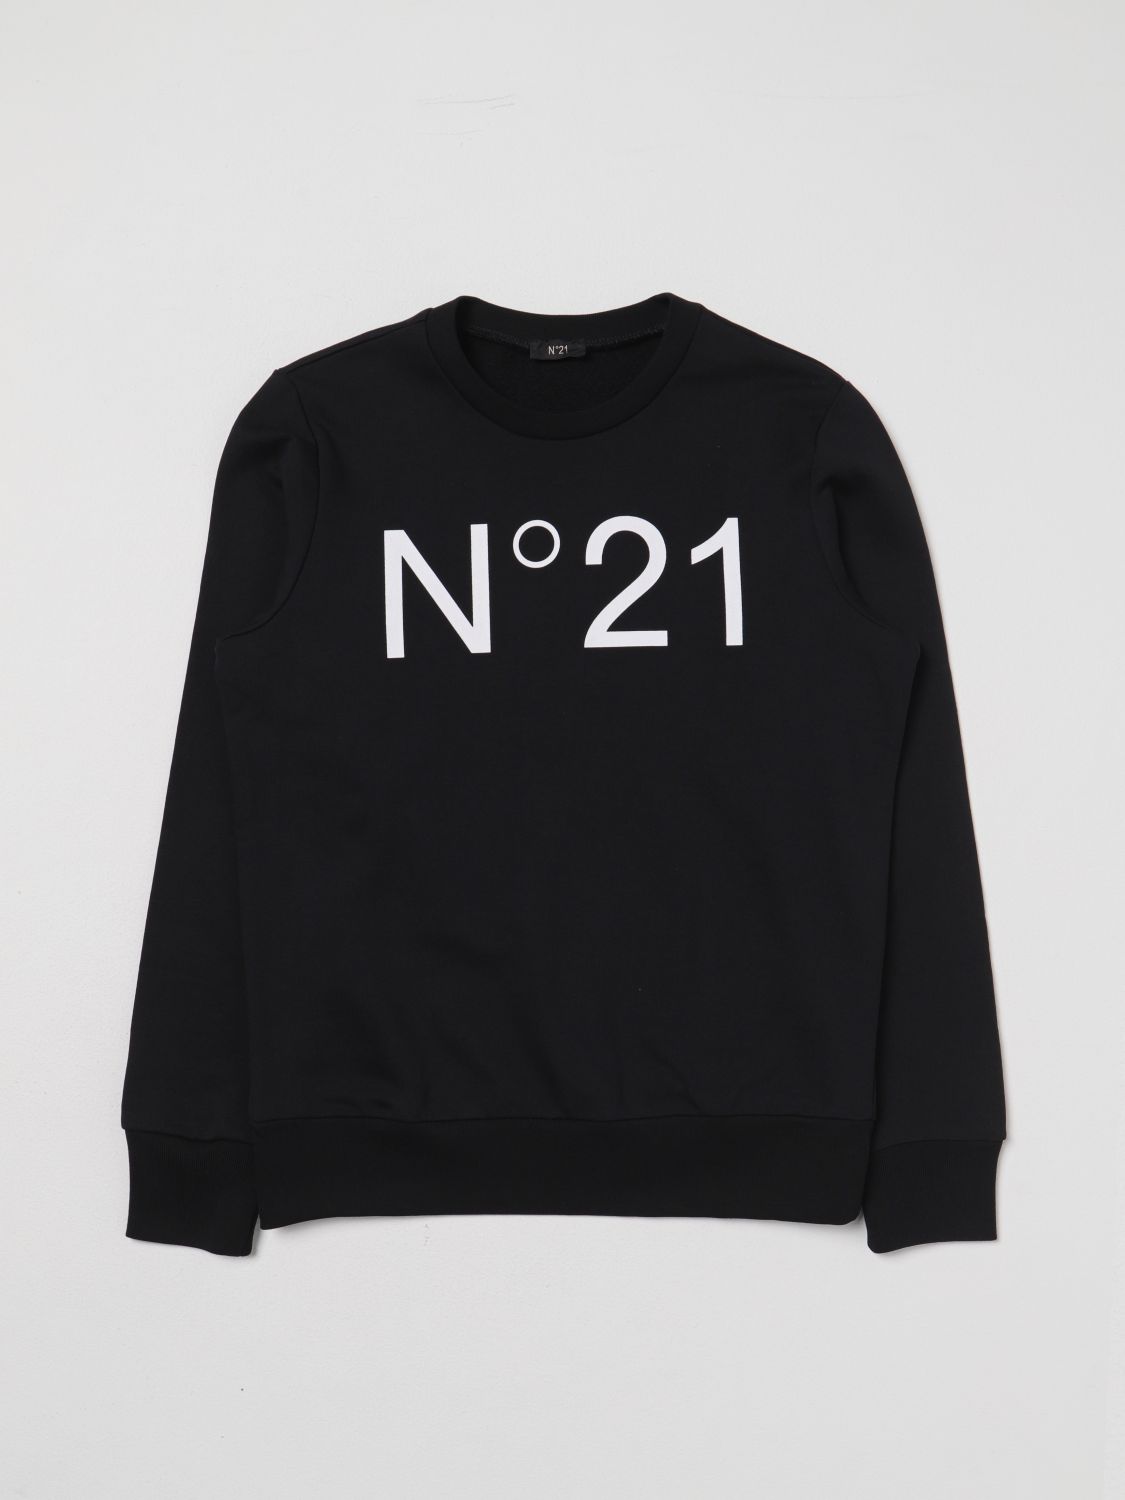 N°21 Sweater N° 21 Kids Color Black